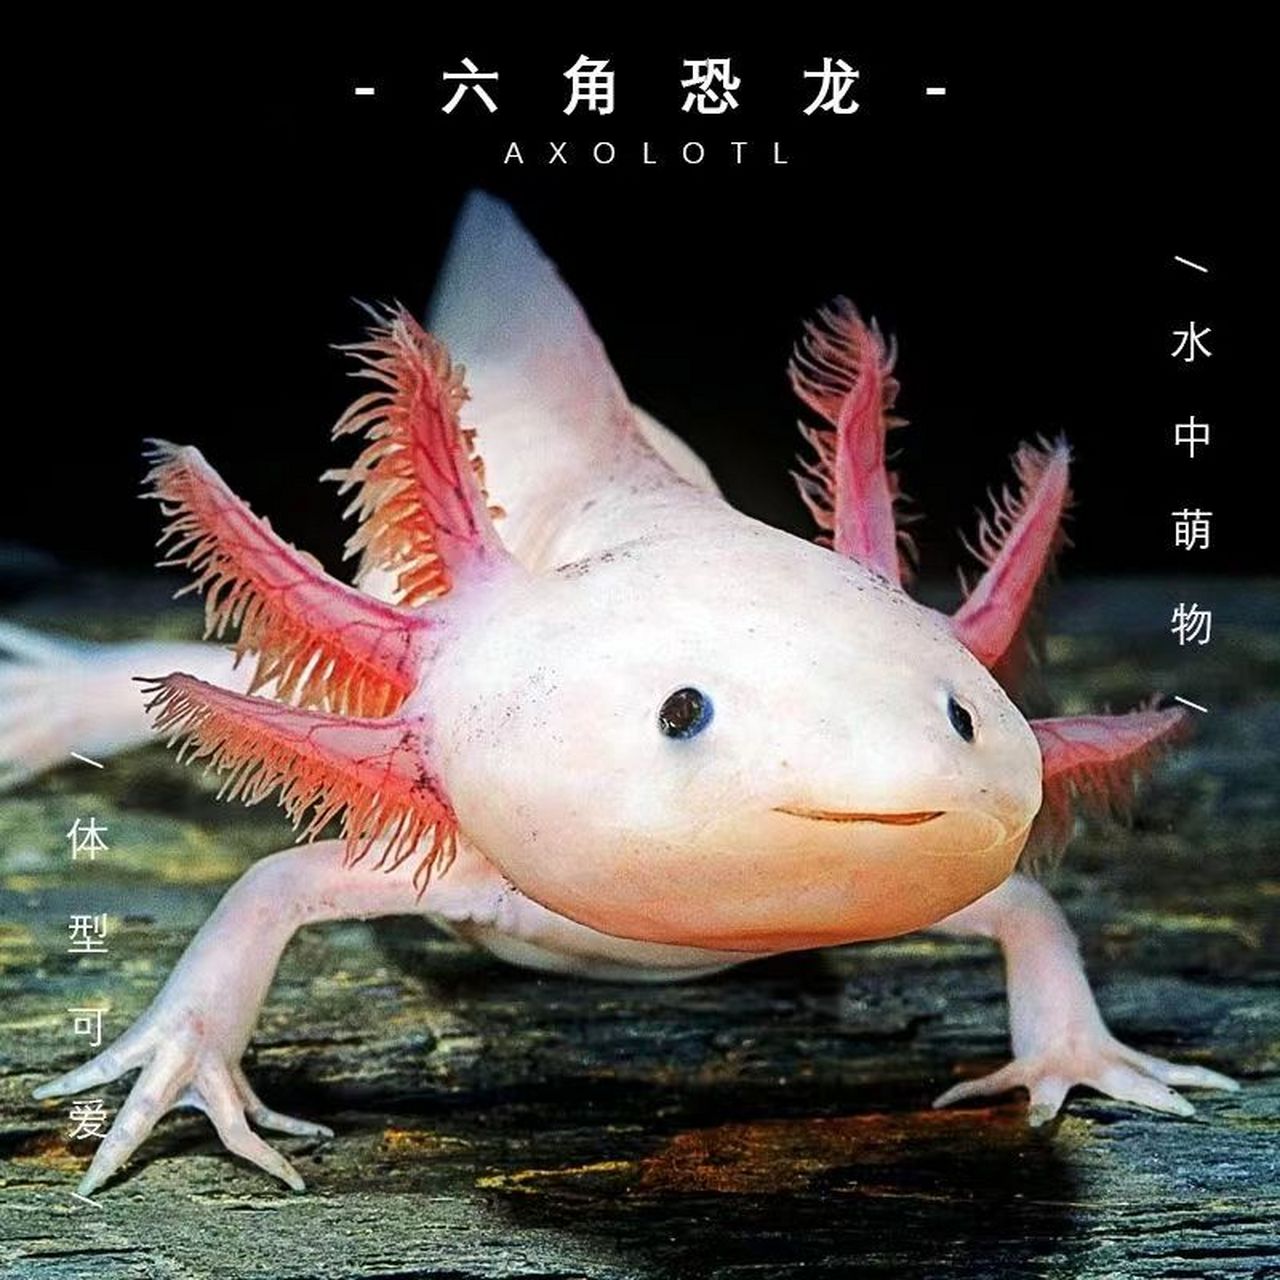 墨西哥钝口螈(英文名称:axolotl),又名美西螈,俗称六角恐龙,是水栖的